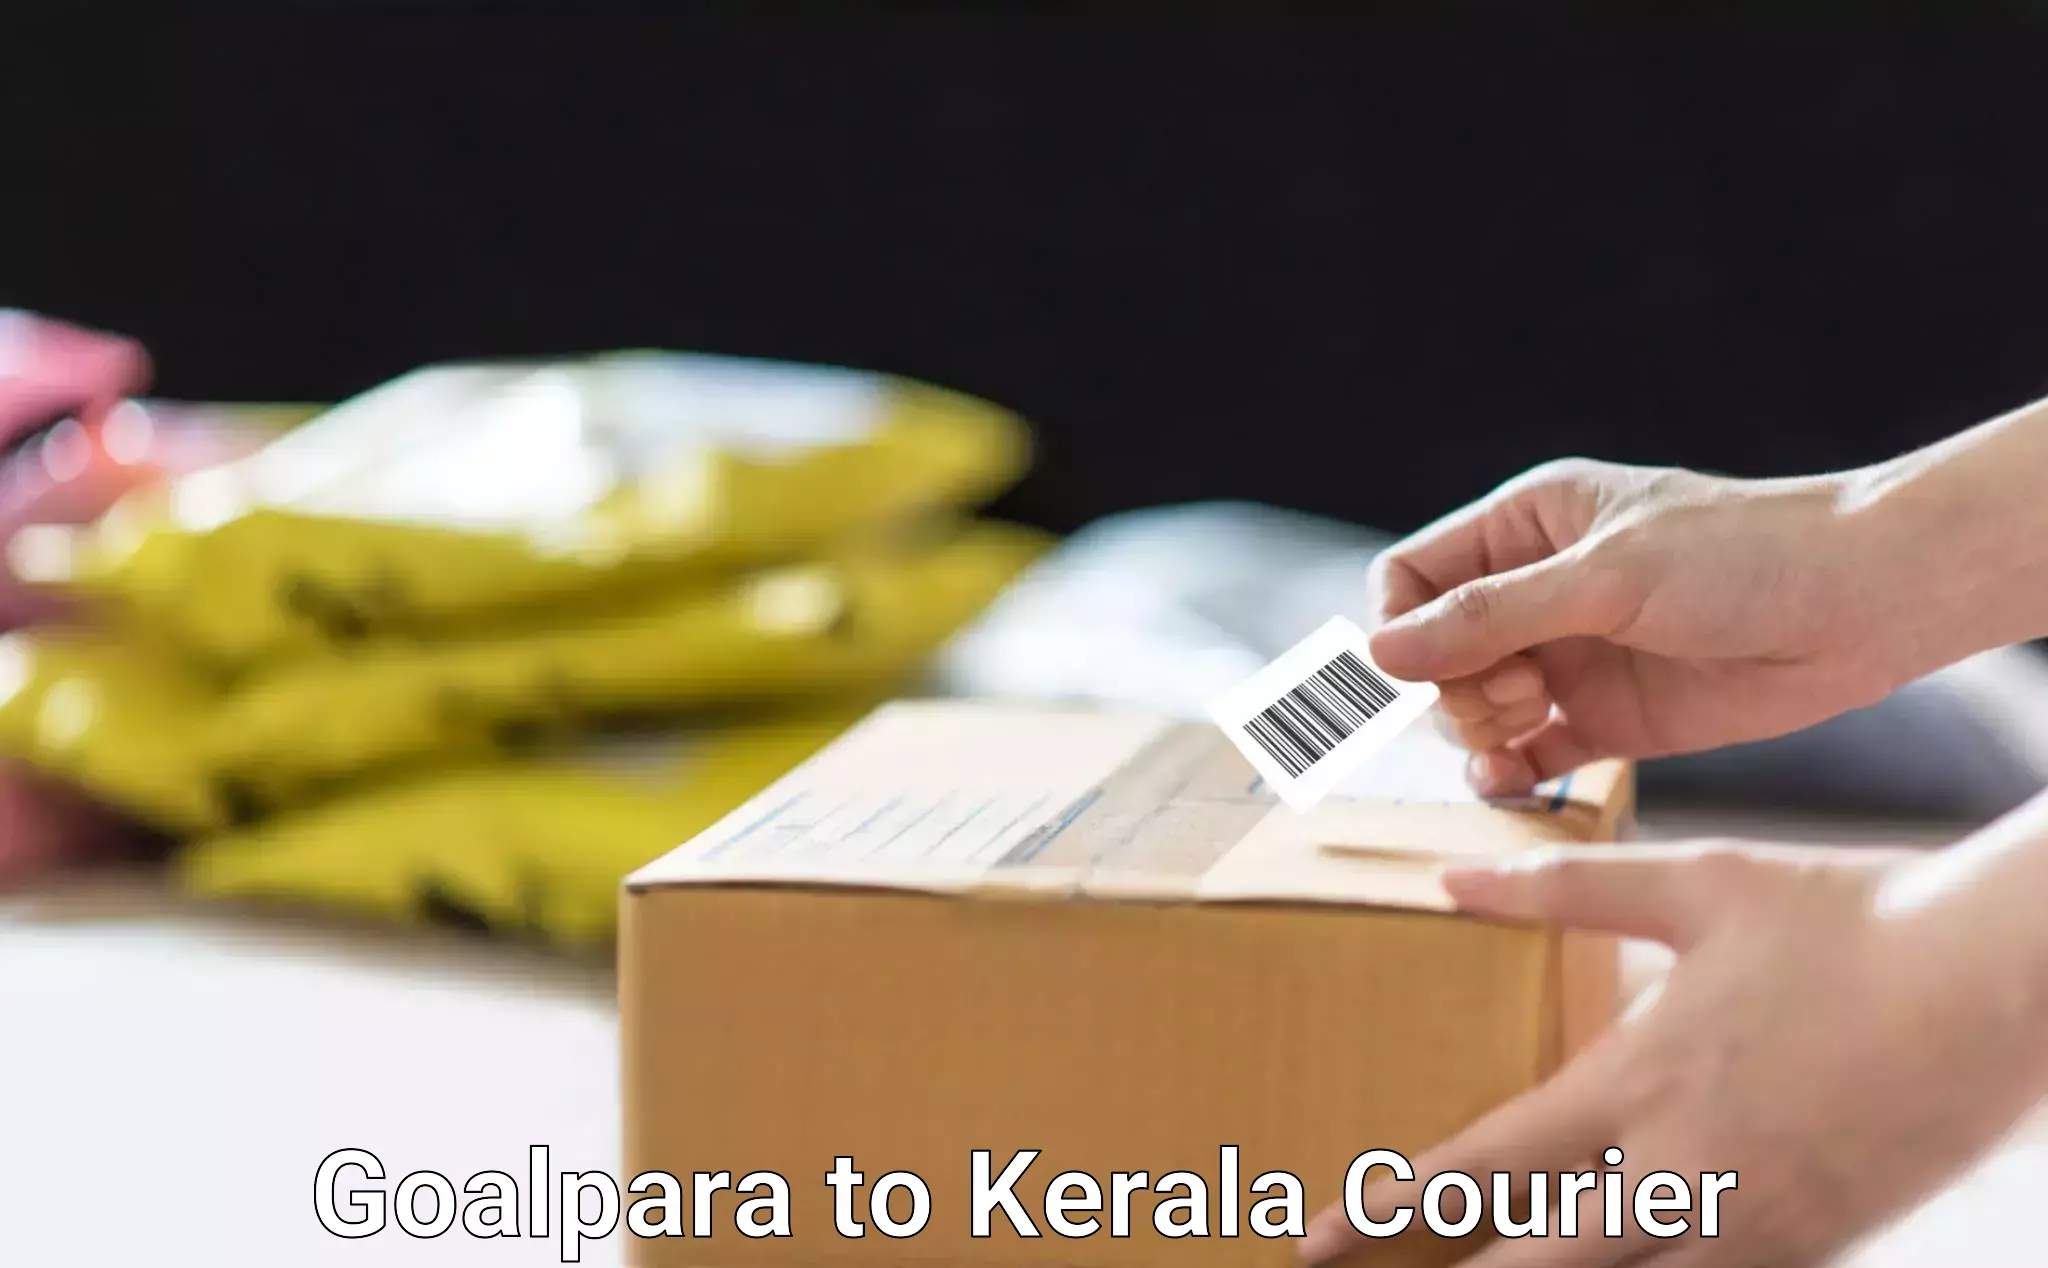 Efficient cargo services Goalpara to Kerala